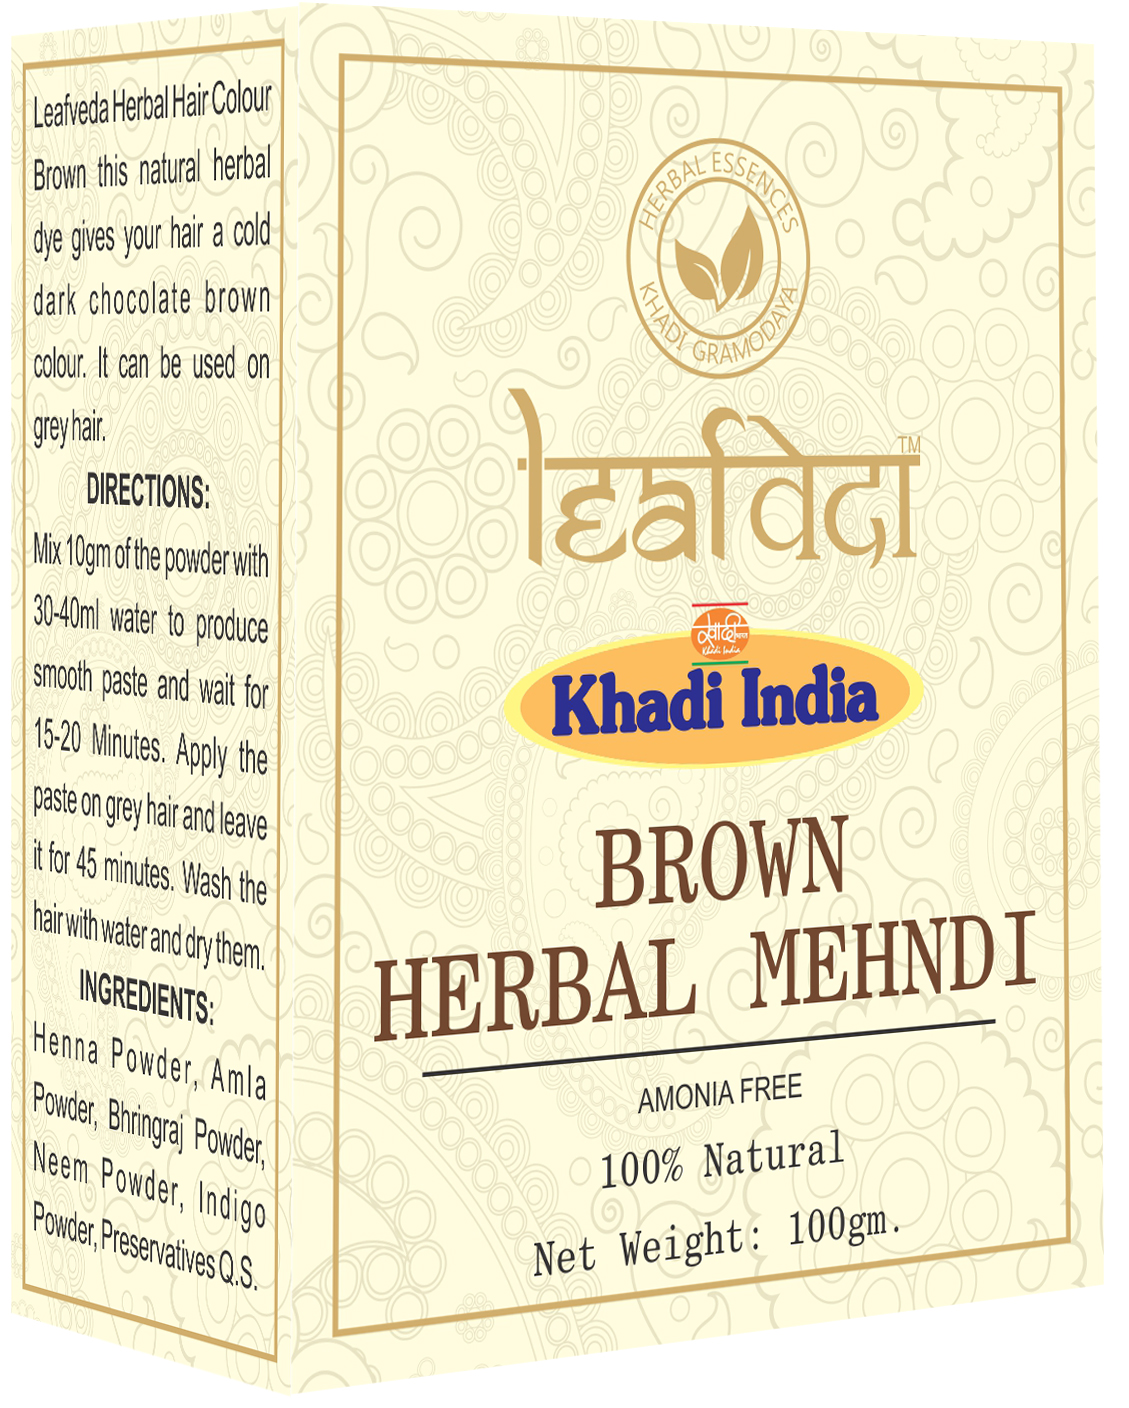 Buy Khadi Leafveda Brown Herbal Mehndi Amonia Free at Best Price Online